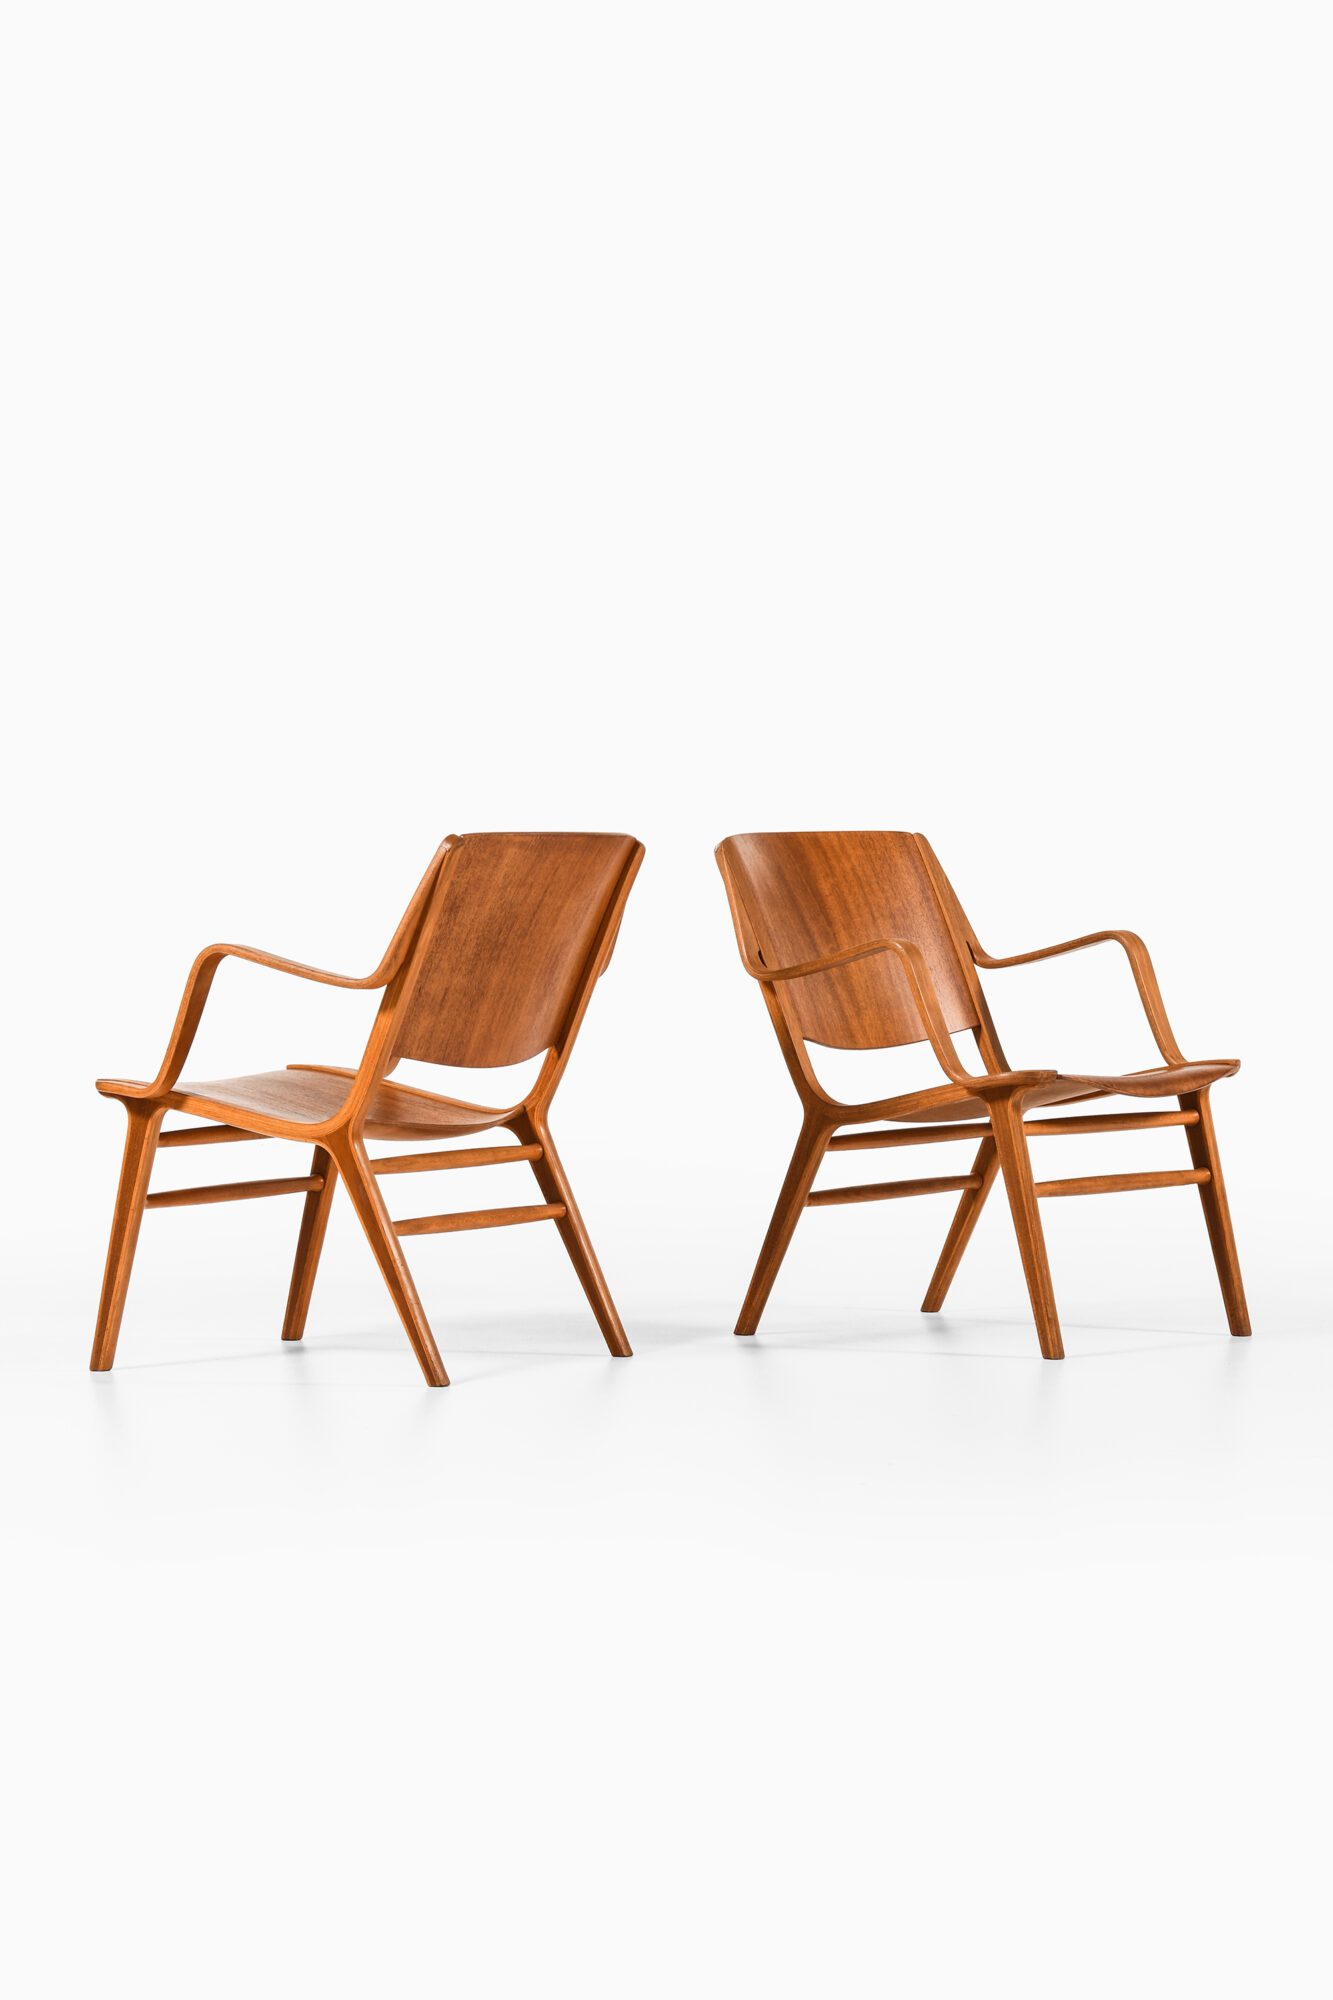 Peter Hvidt & Orla Mølgaard-Nielsen easy chairs at Studio Schalling